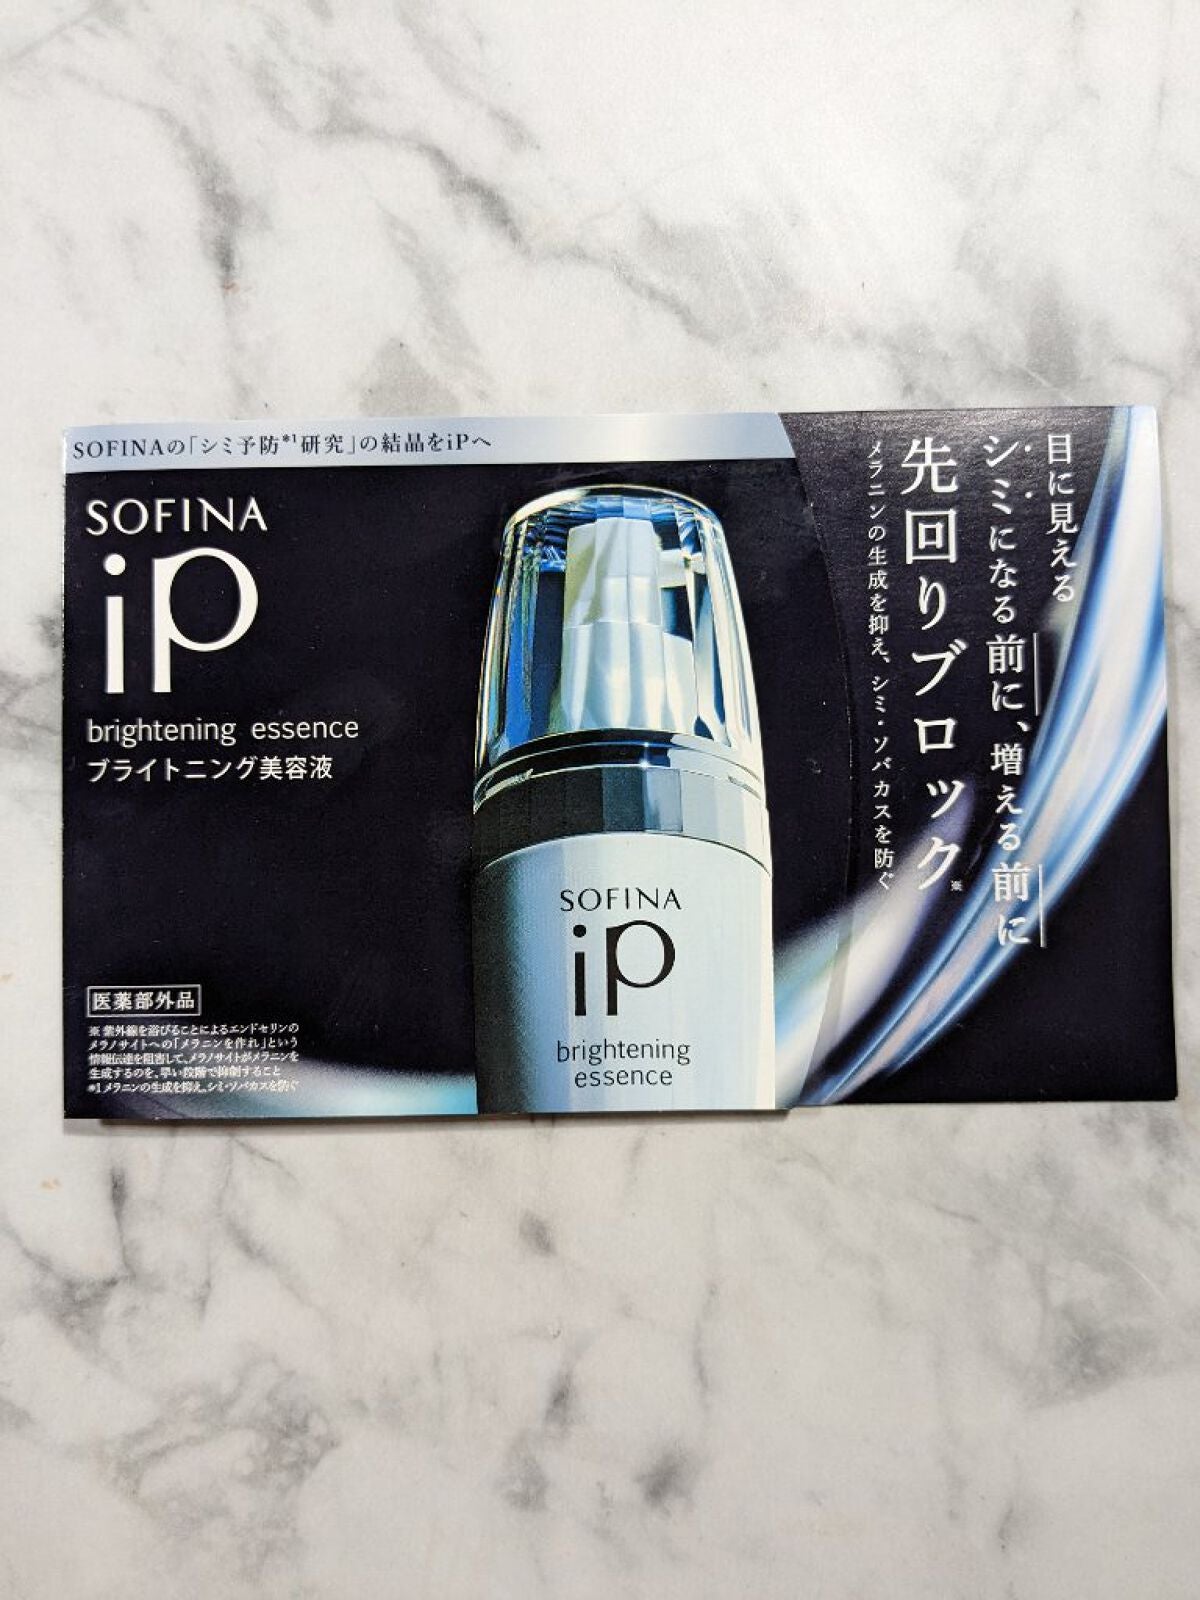 ソフィーナ iP ブライトニング美容液 | 本体 40g / SOFINA iP